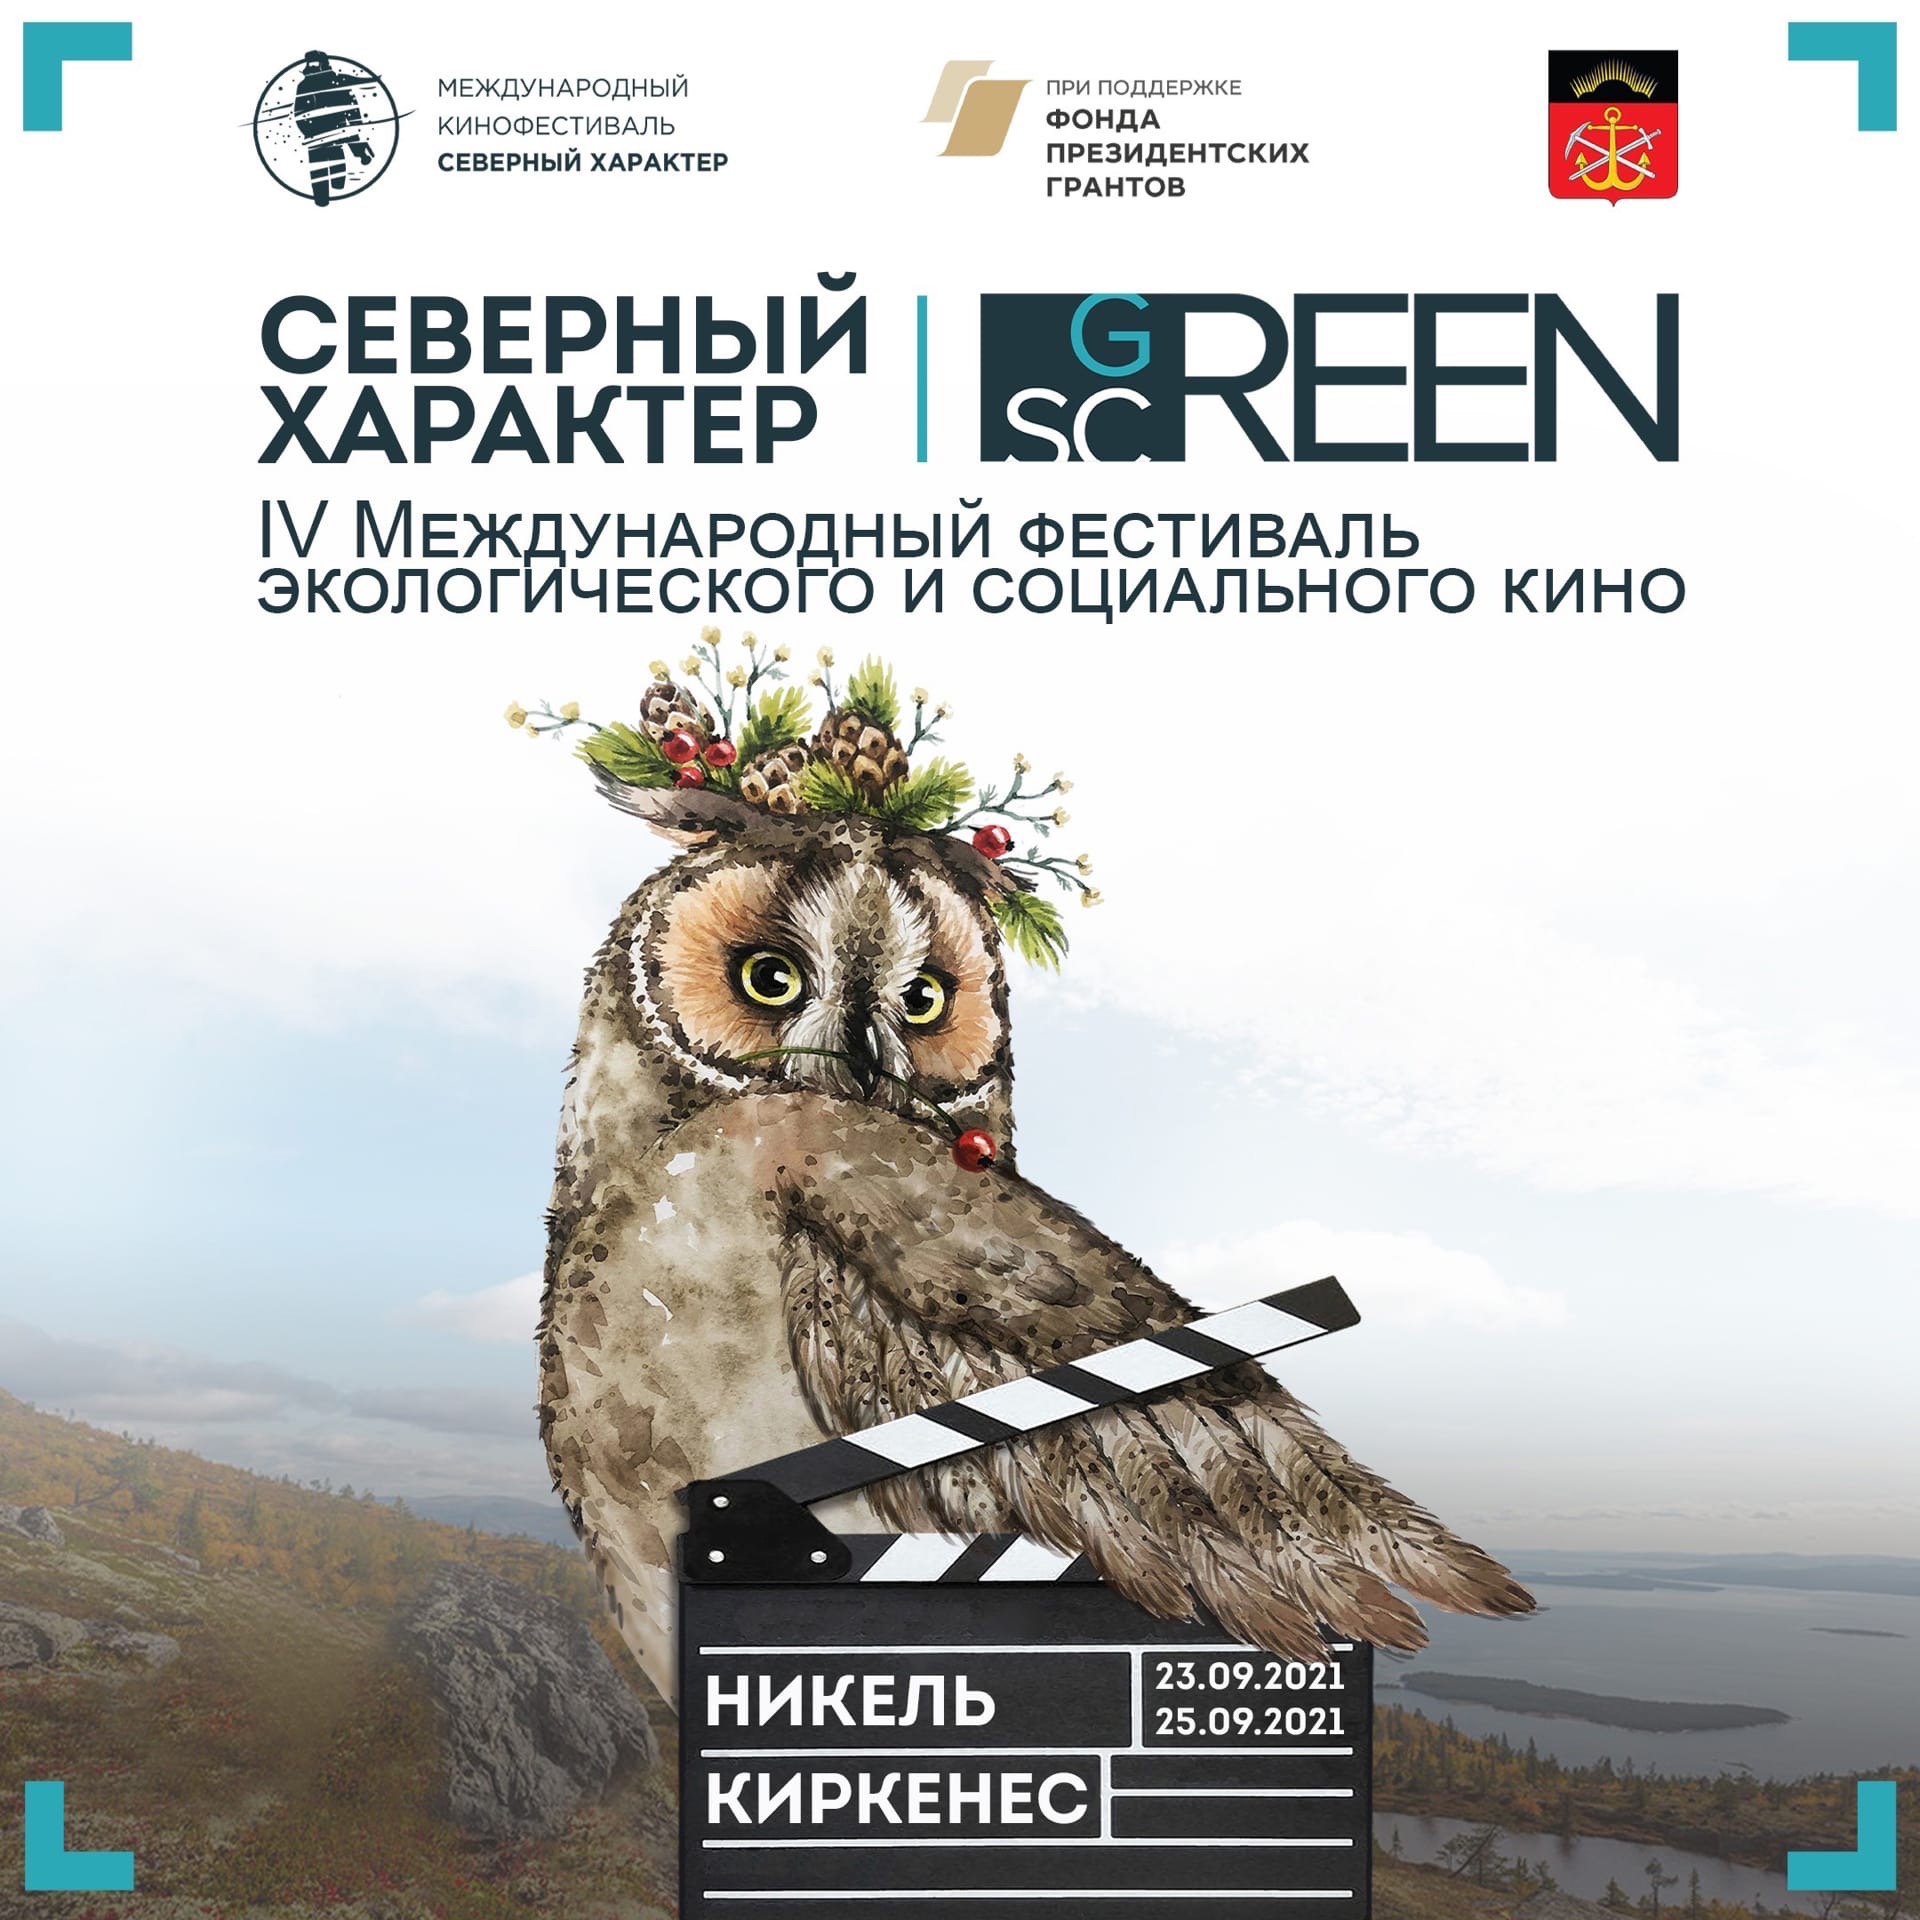 На Международном кинофестивале в Никеле и Киркенесе будет вручен приз GREEN ICE CAMERA